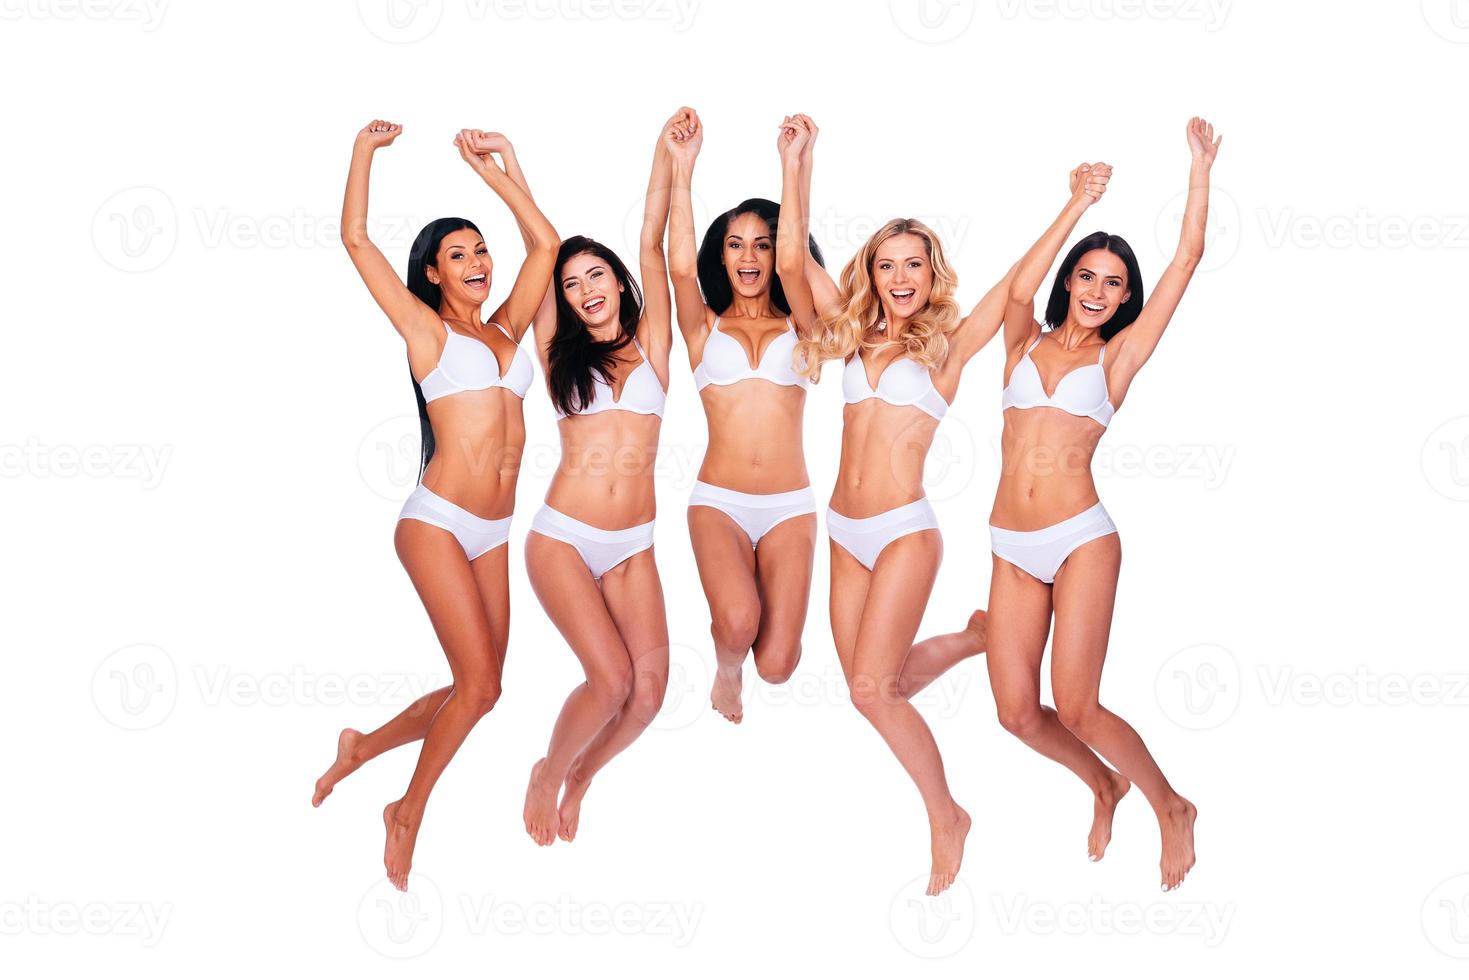 beautés volantes. pleine longueur de cinq belles femmes en lingerie sautant et gardant les bras levés sur fond blanc photo